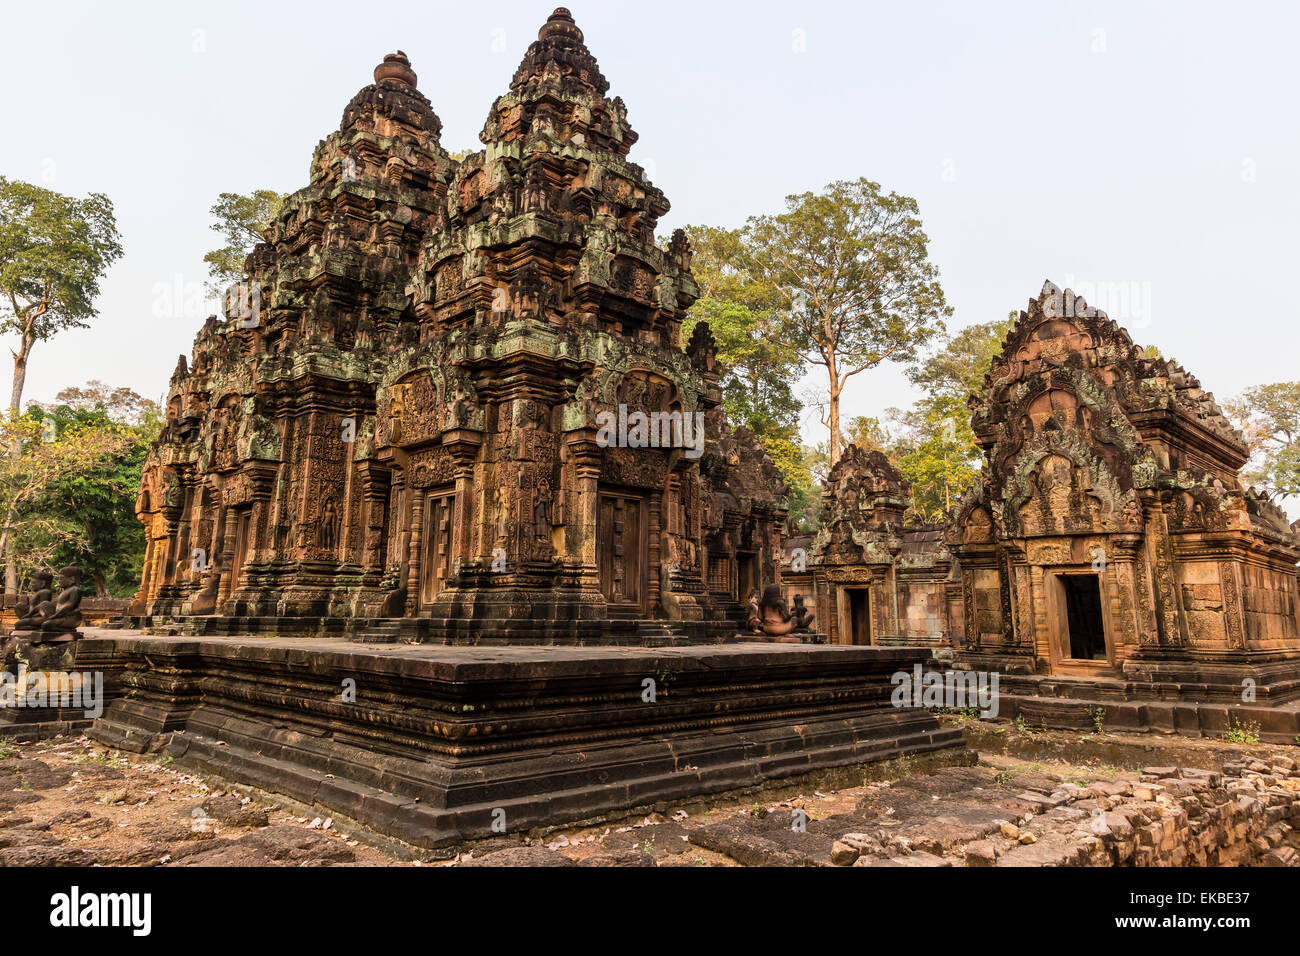 Sculptures en grès rouge ornée au Temple de Banteay Srei à Angkor, l'UNESCO, Siem Reap, Cambodge, Indochine, Asie du Sud-Est, l'Asie Banque D'Images